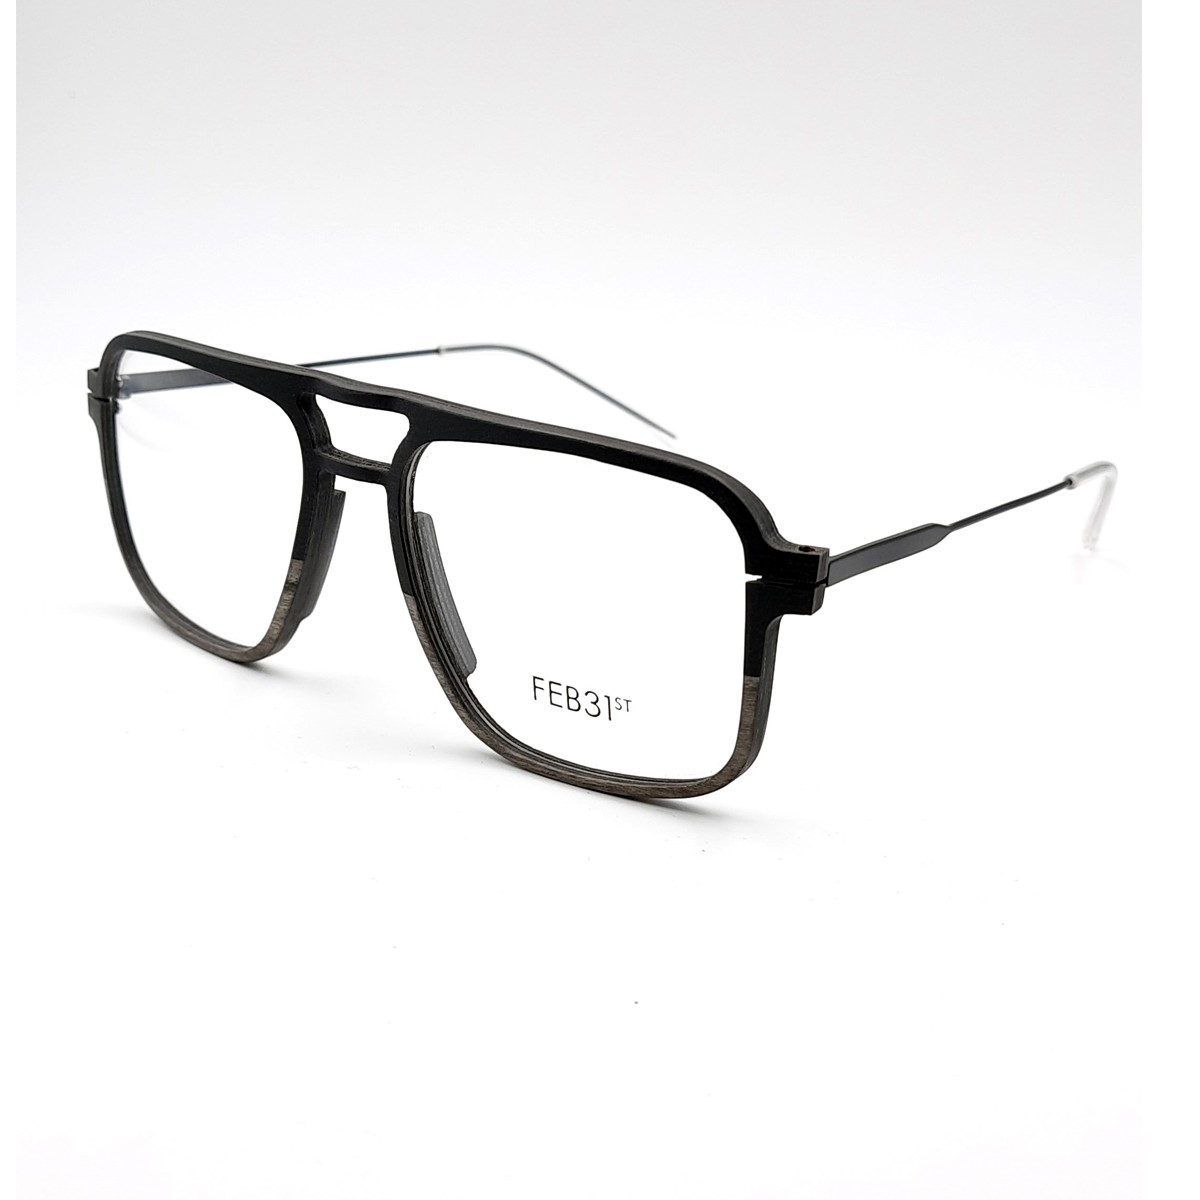 Feb31st Walter | Men's eyeglasses